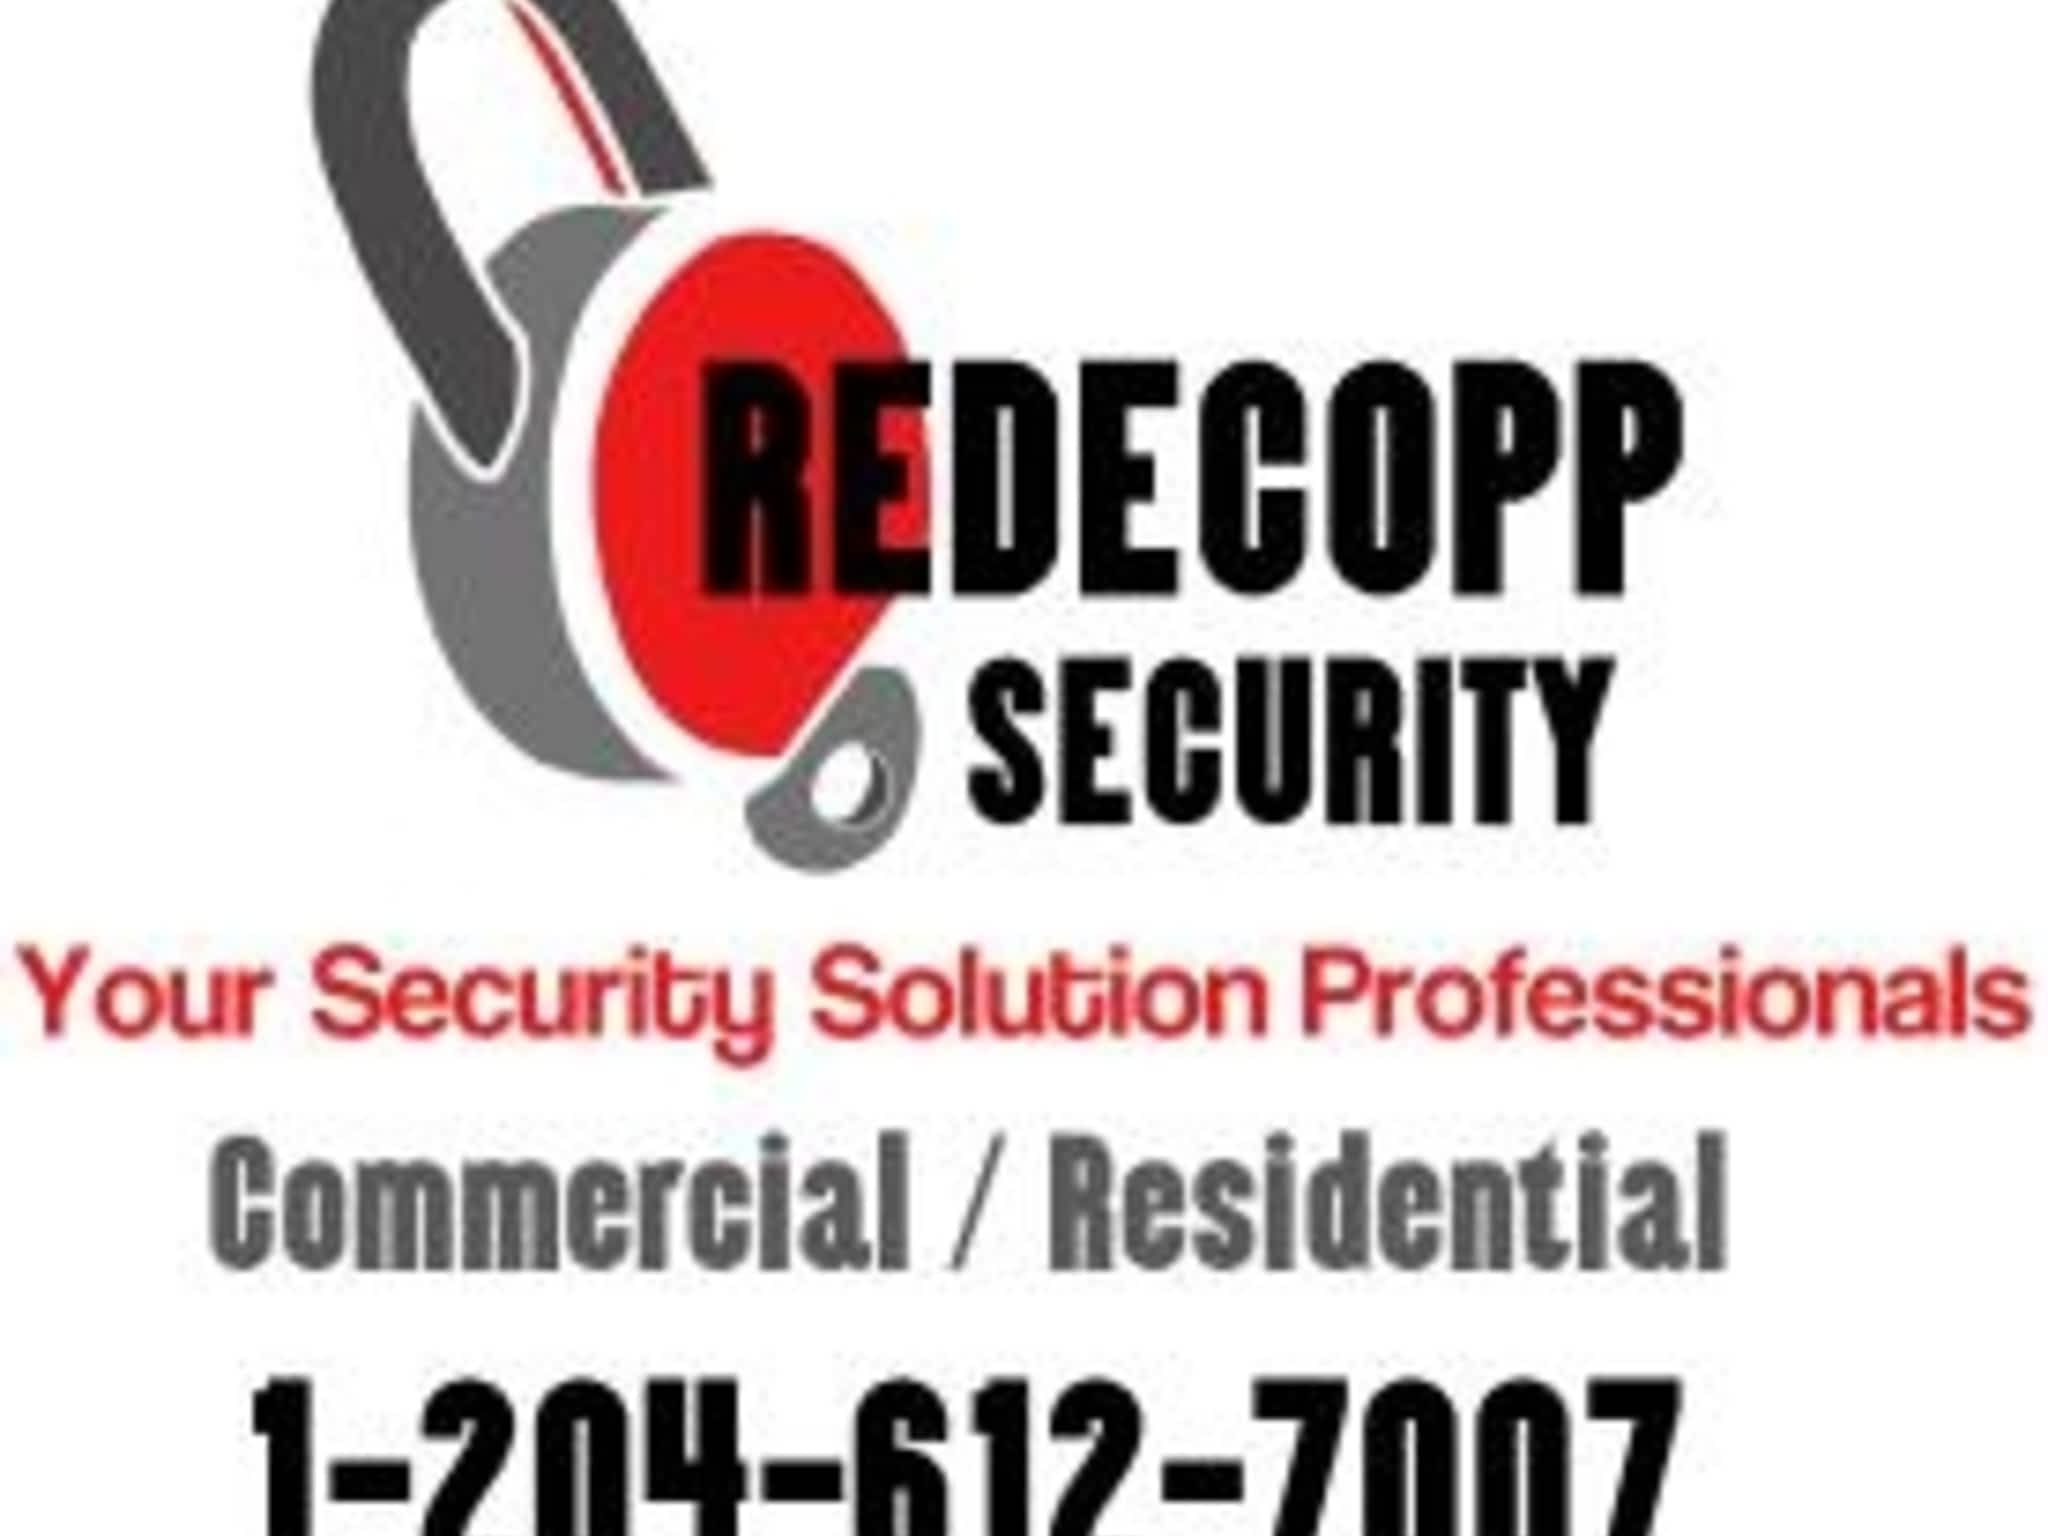 photo Redecopp Security